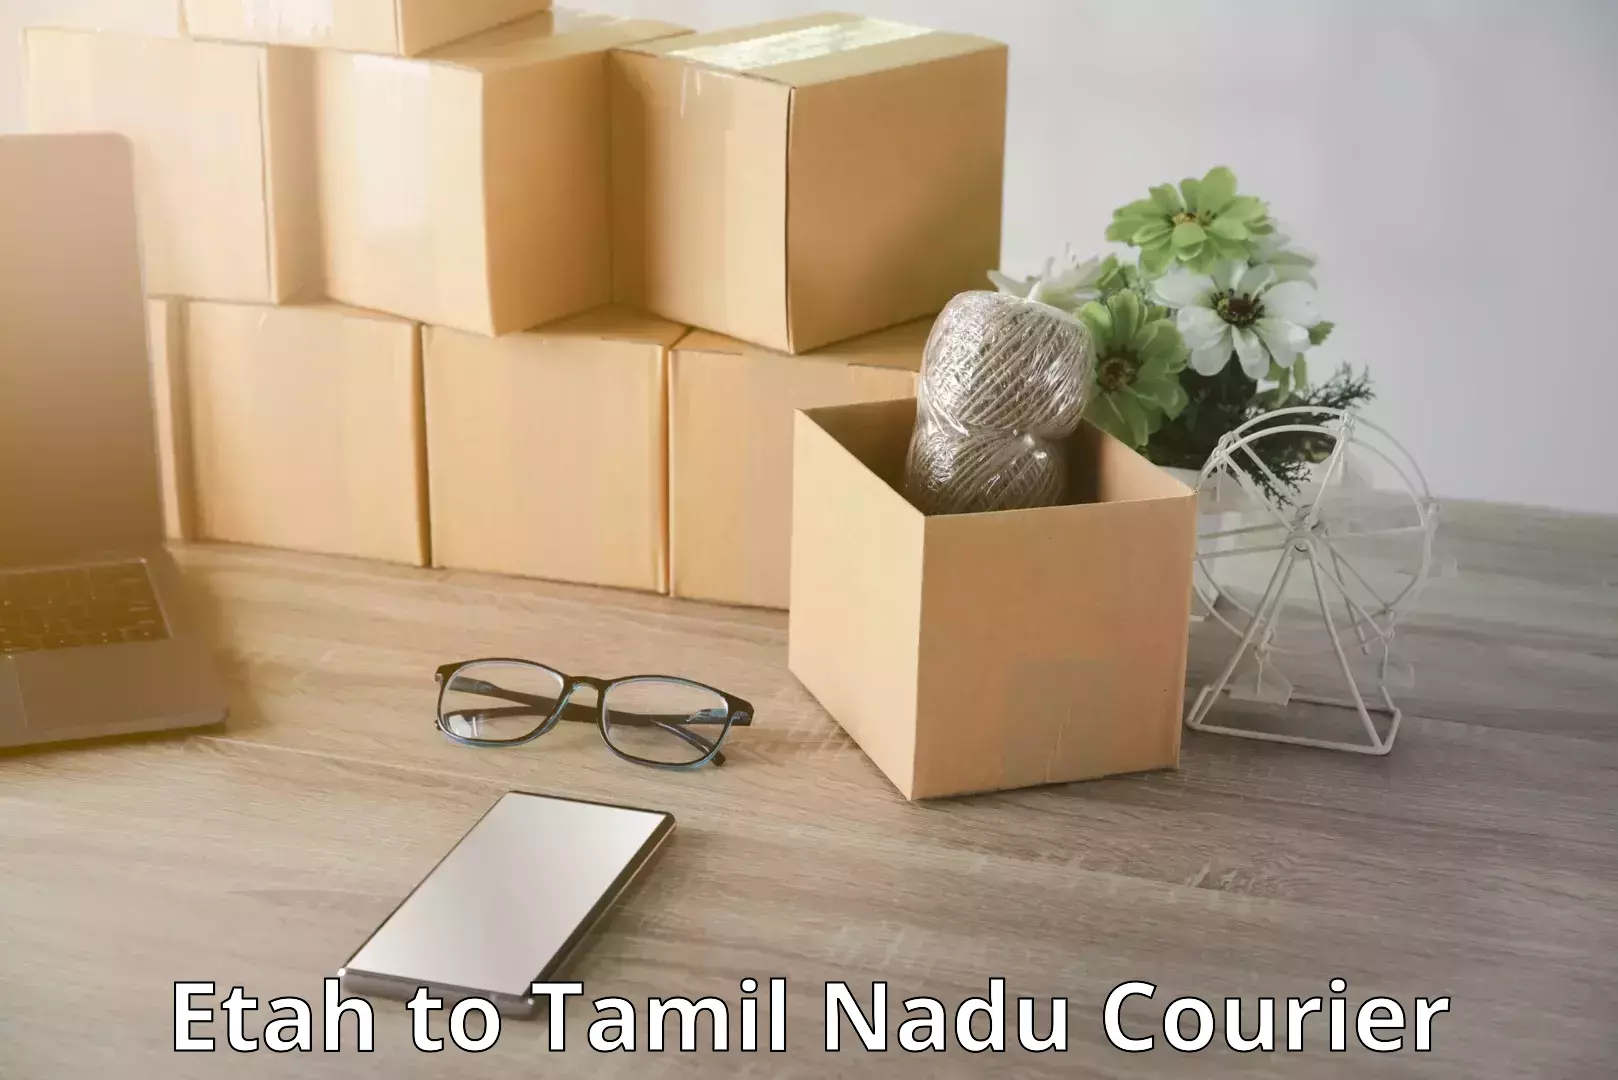 Airport luggage delivery Etah to Tamil Nadu